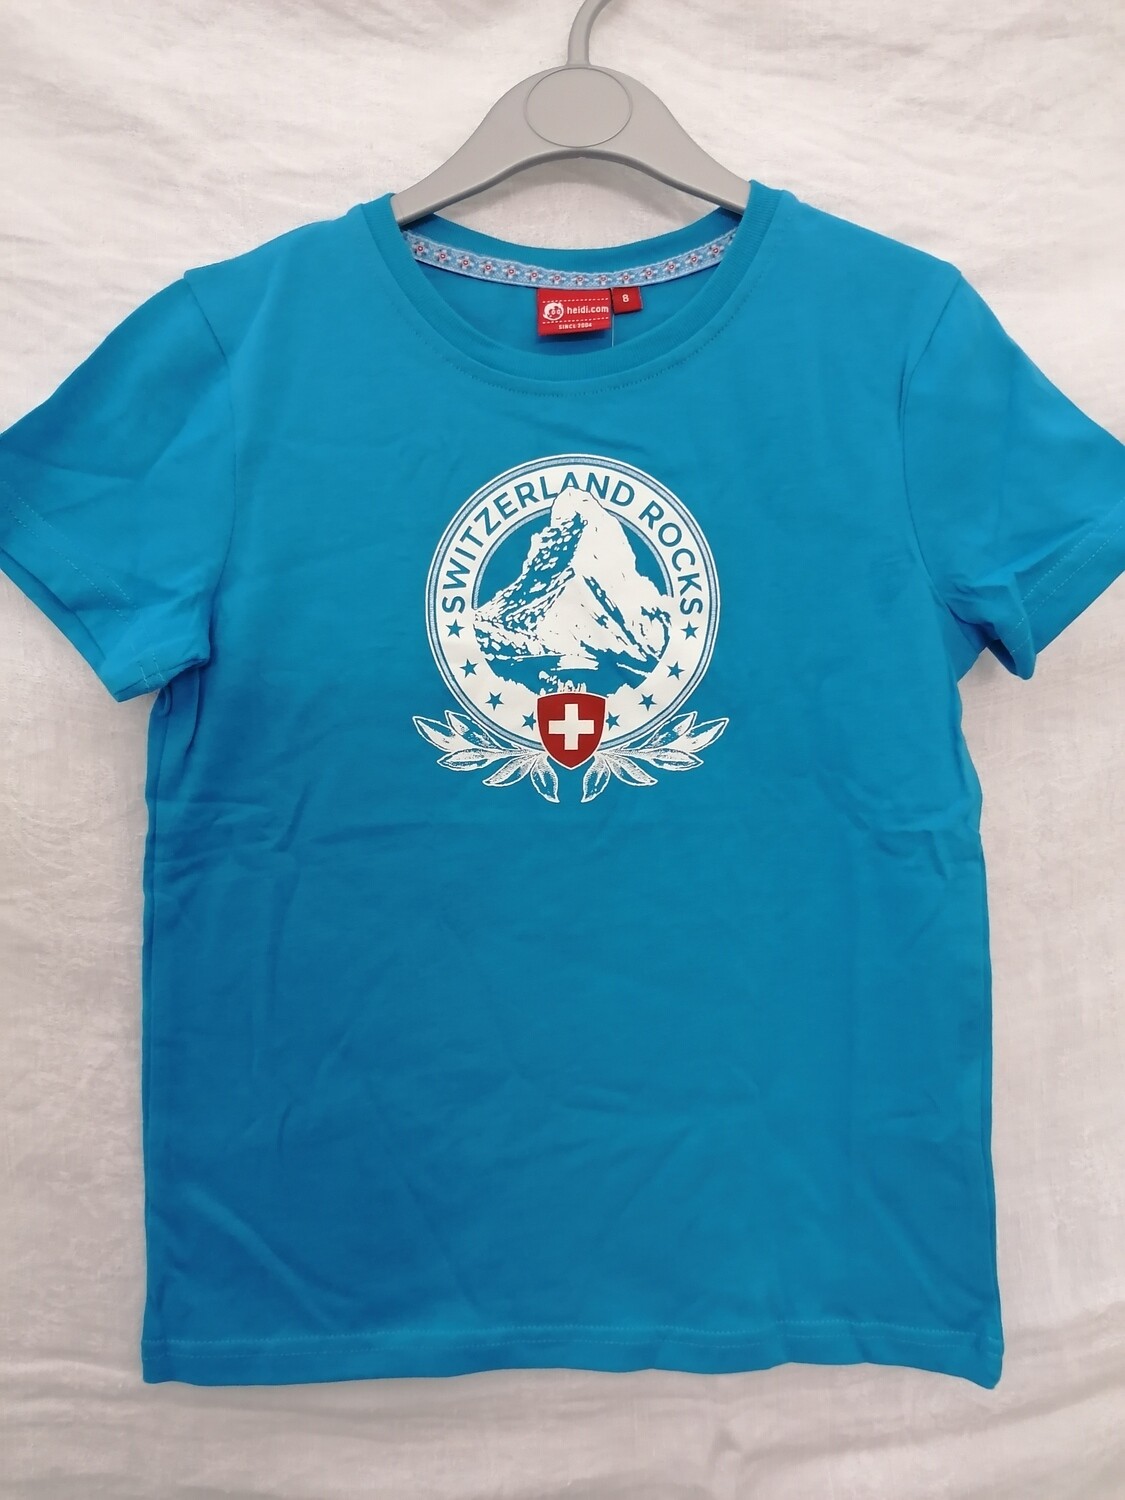 Tee shirt turquoise Switzerland Rocks